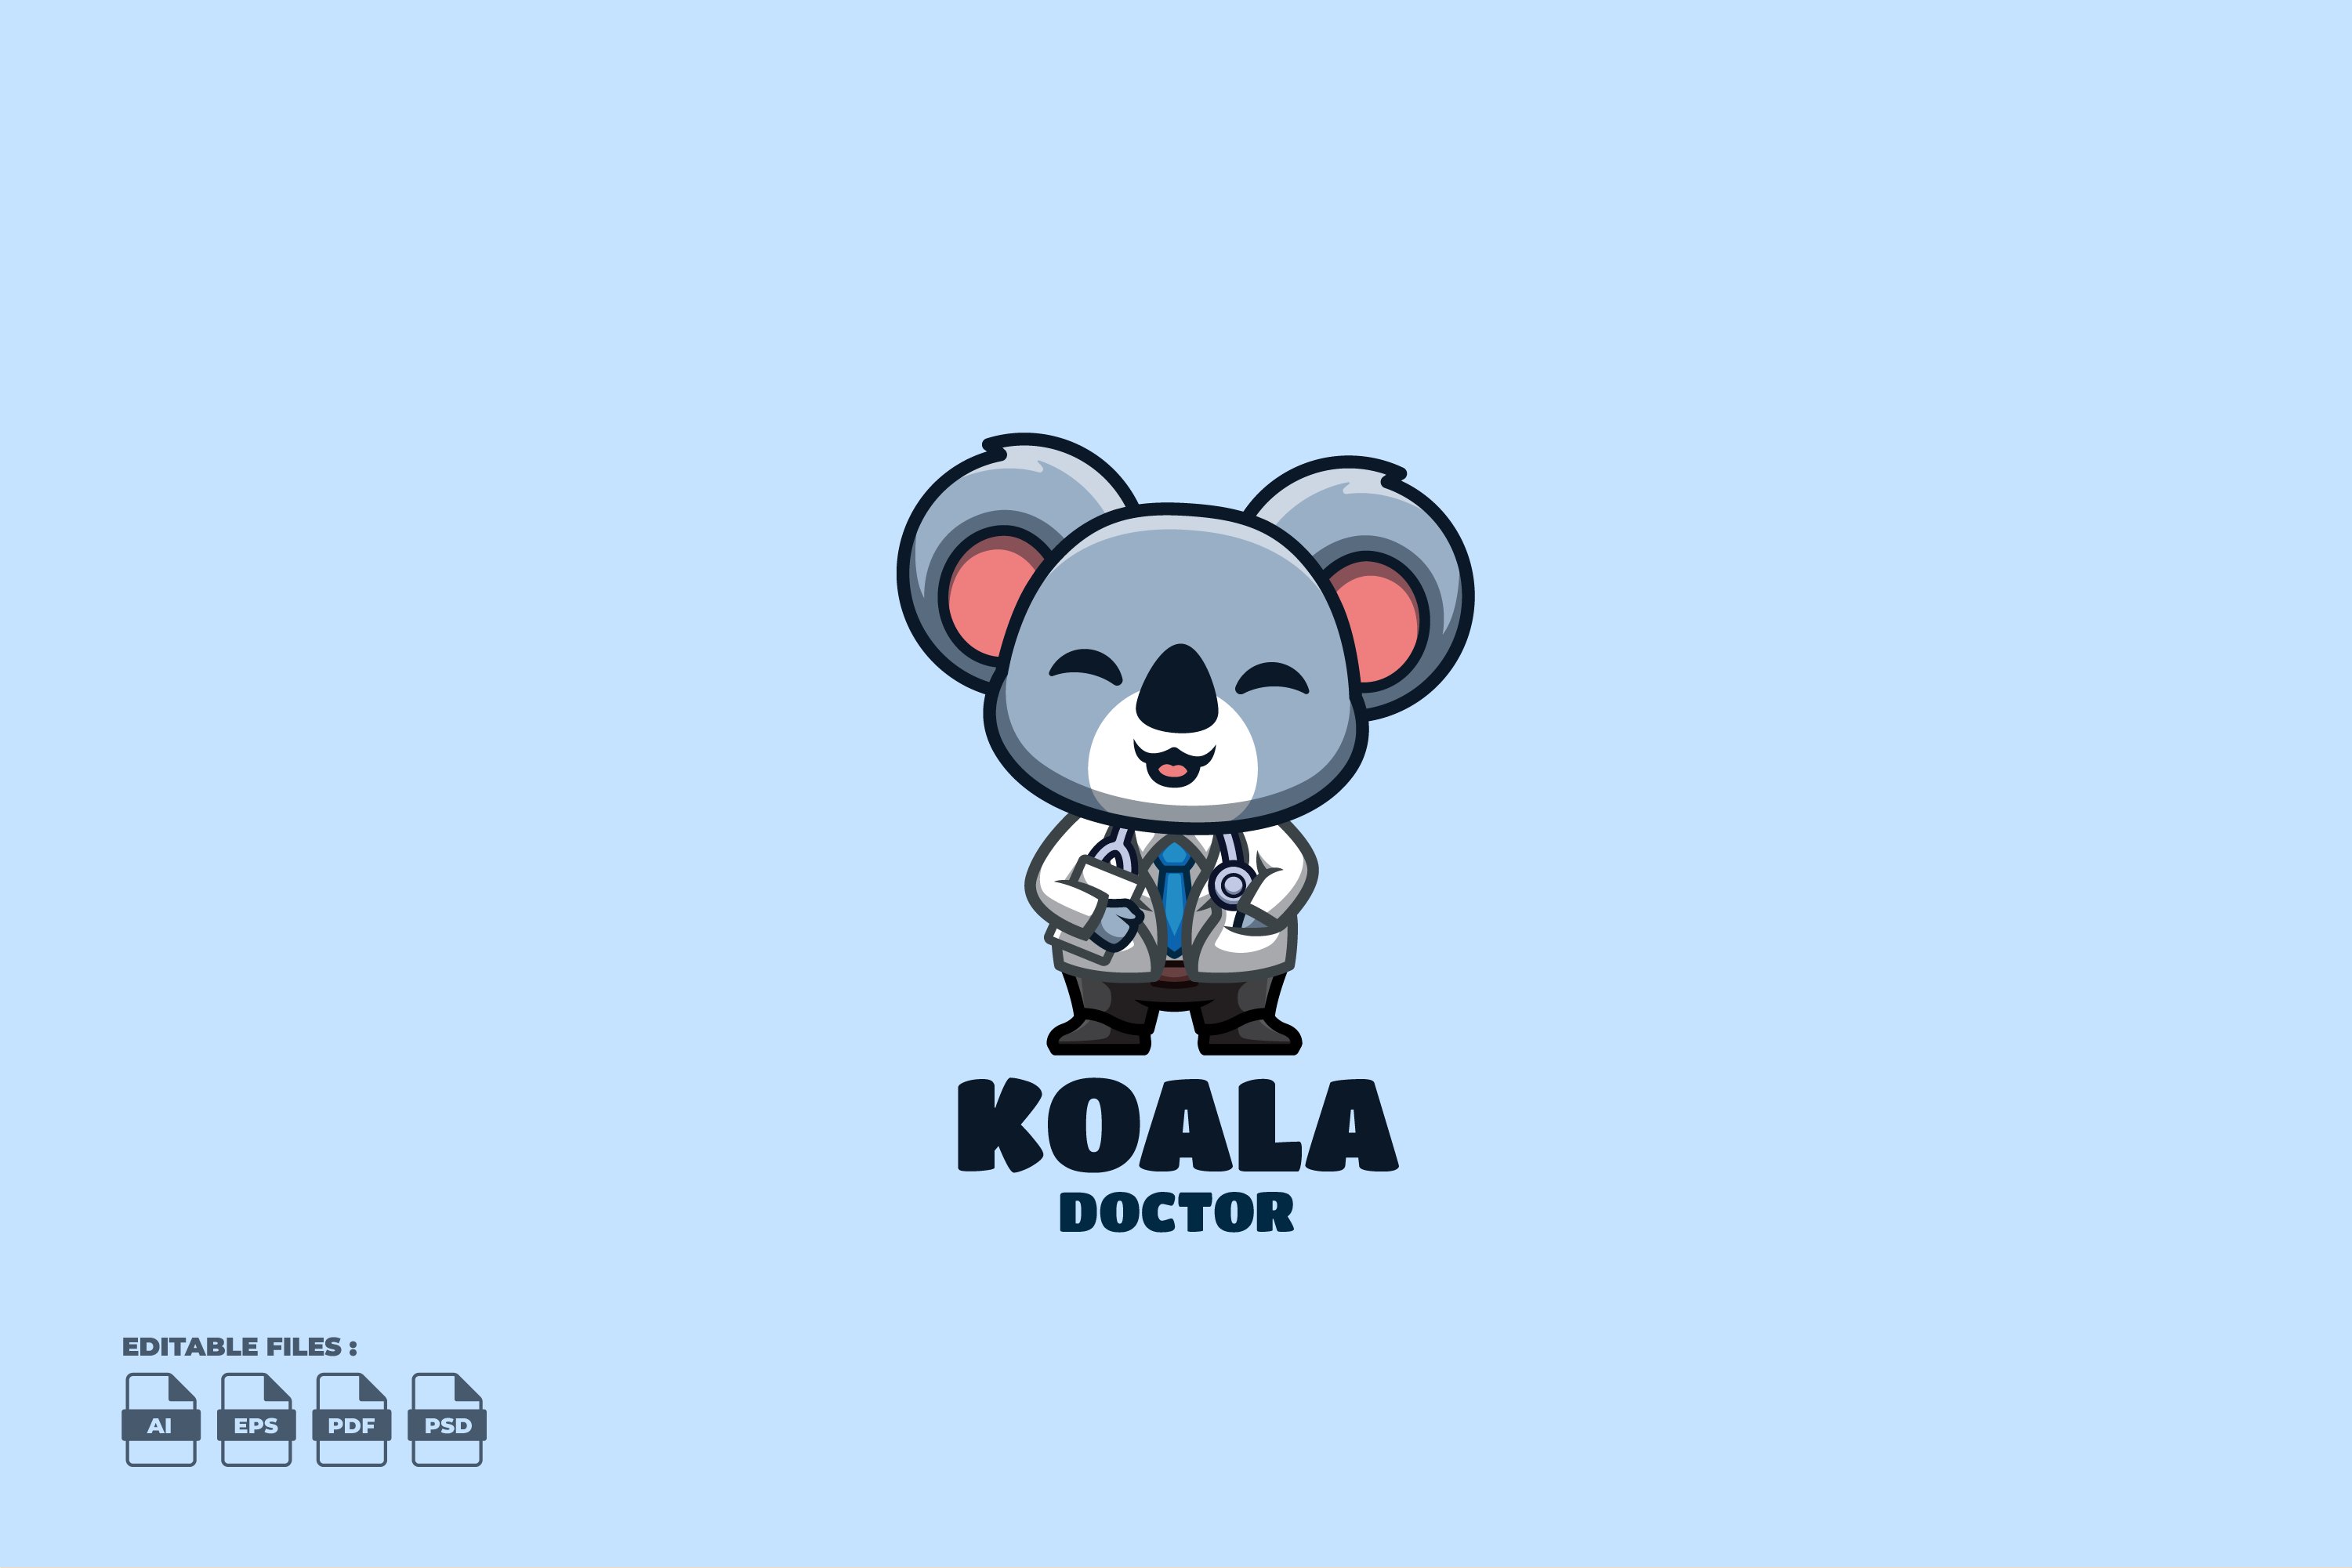 Doctor Koala Cute Mascot Logo cover image.